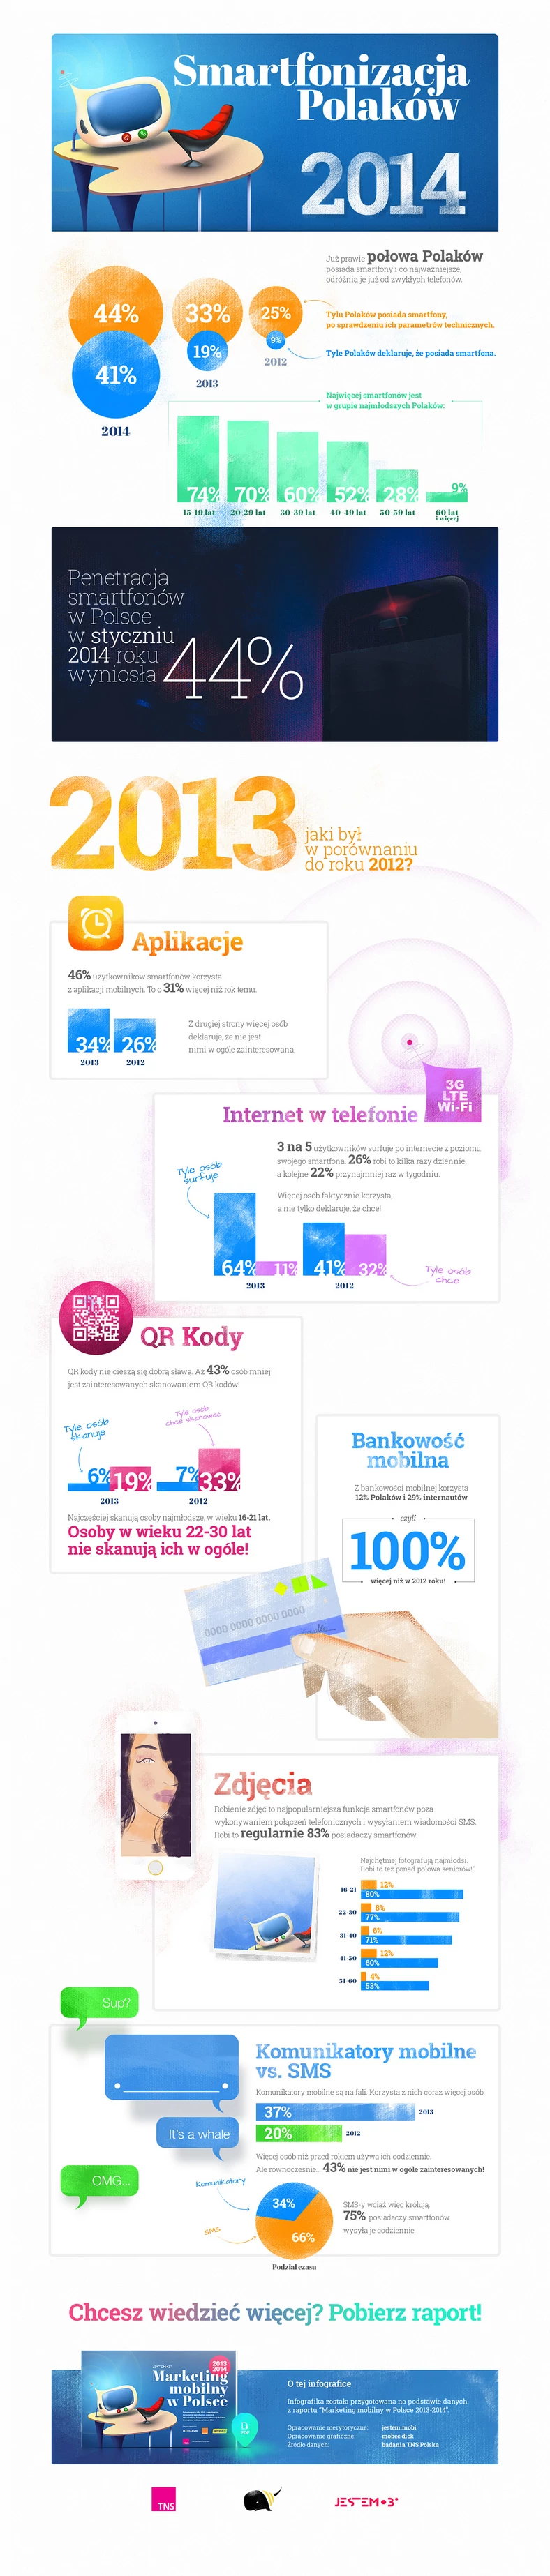 Infografika TNS - Polacy i smartfony